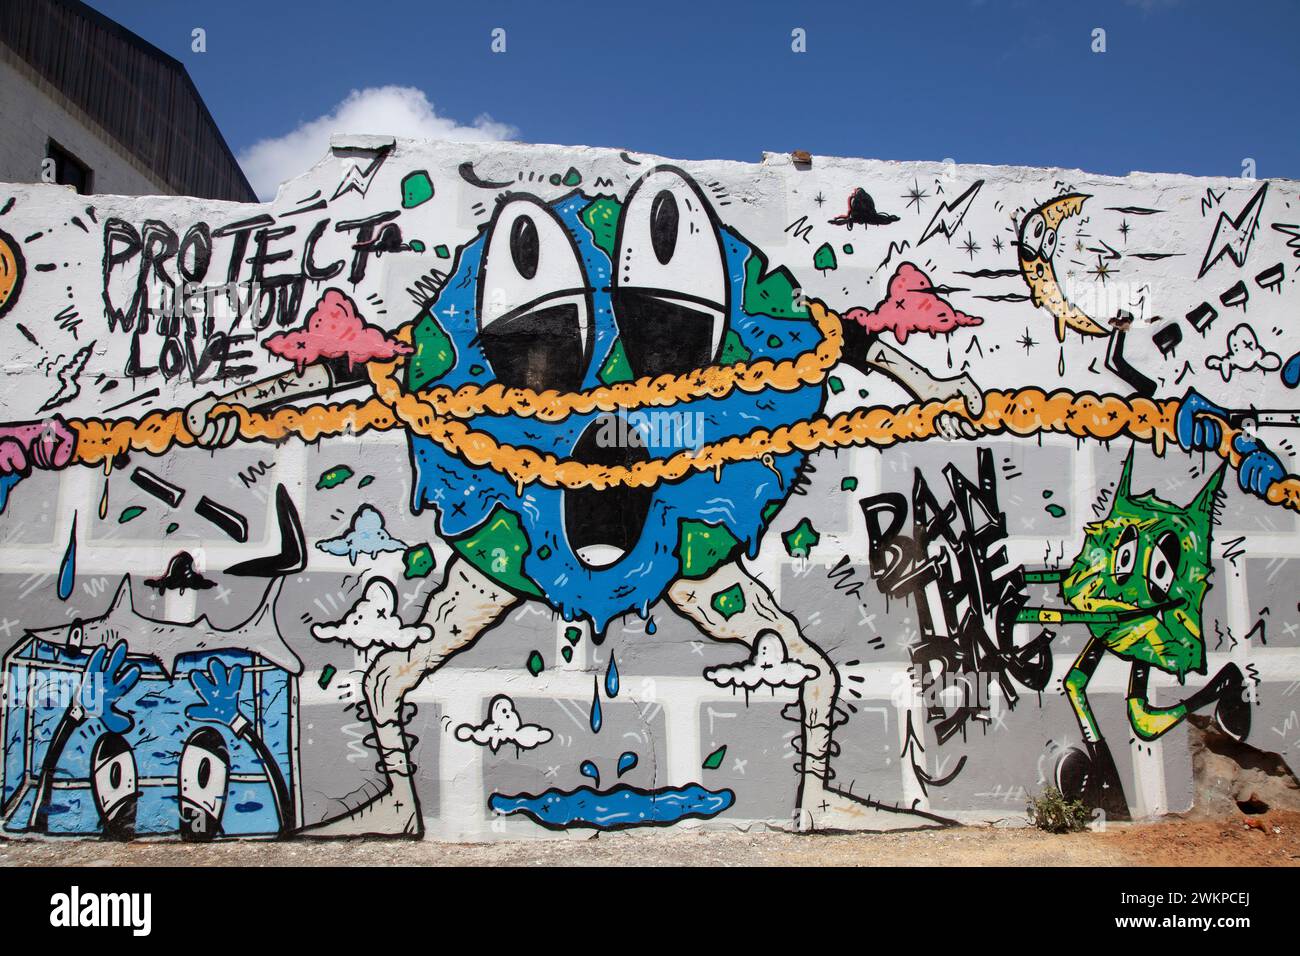 Graffiti sur le mur à Woodstock, le Cap - Afrique du Sud Banque D'Images